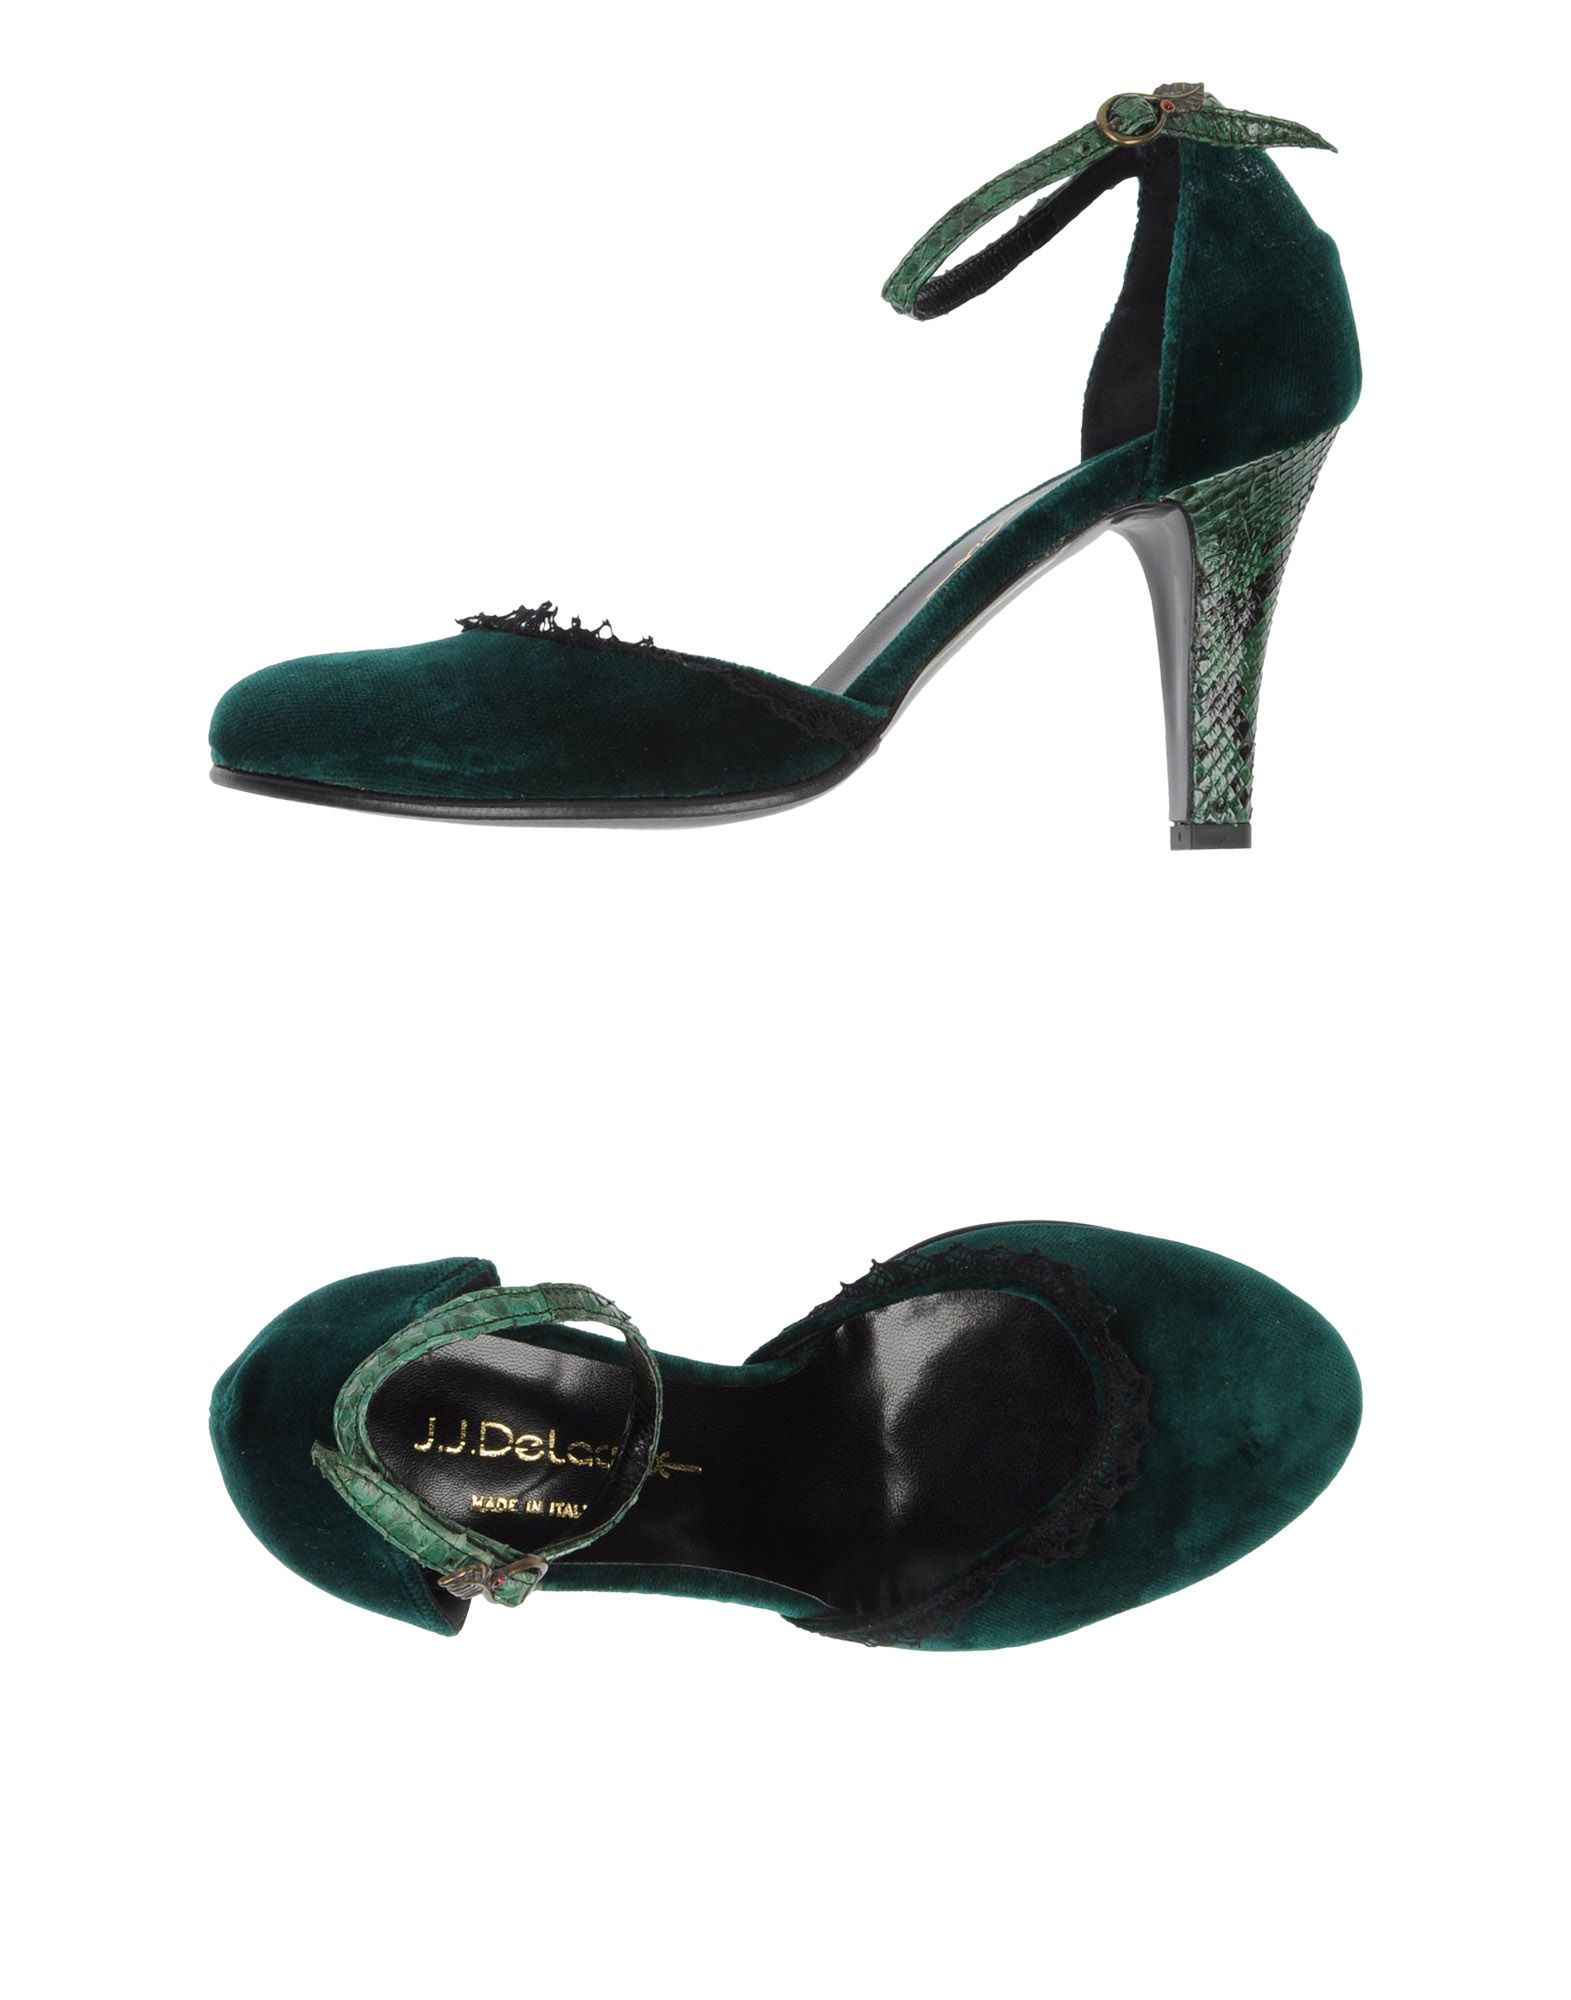 Foto J.J.Delacroix Zapatos De SalóN Mujer Verde